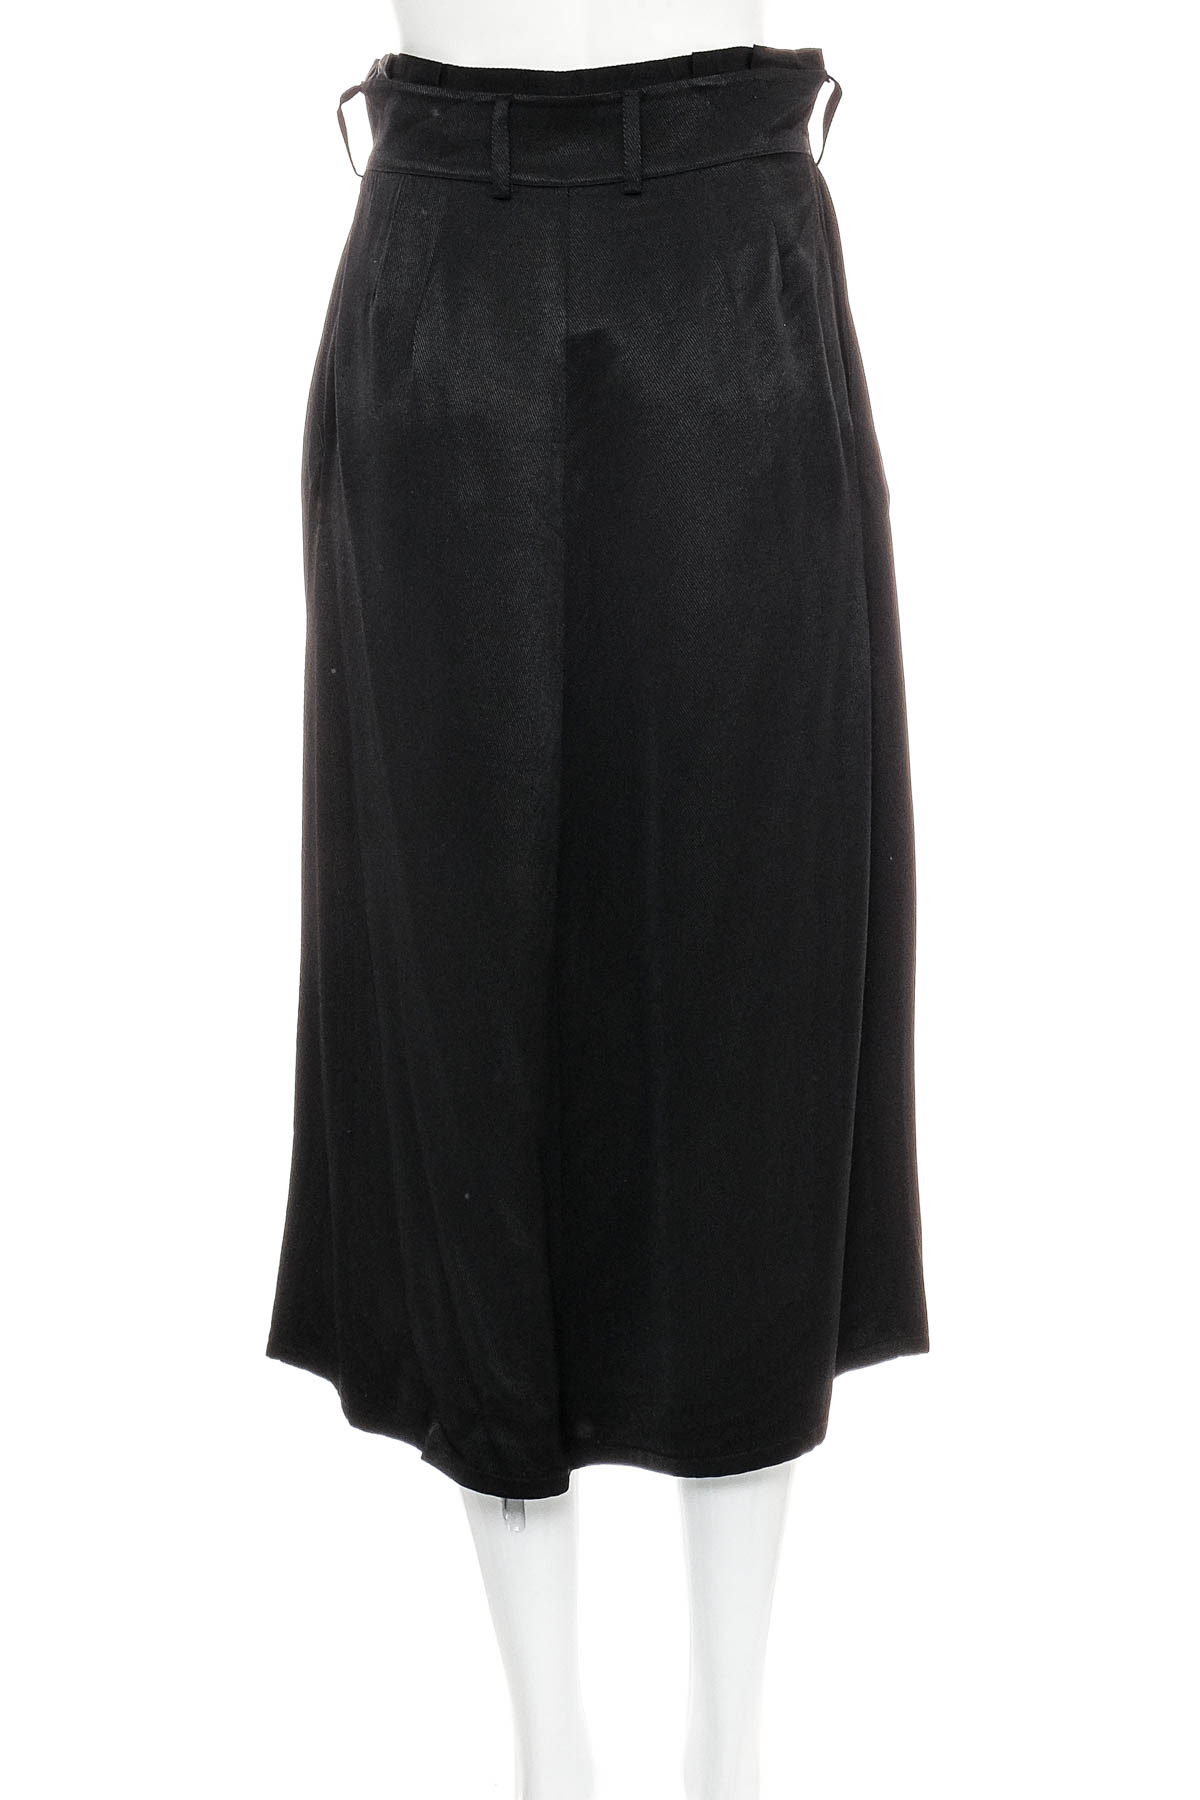 Skirt - ASTRID BLACK LABEL - 1